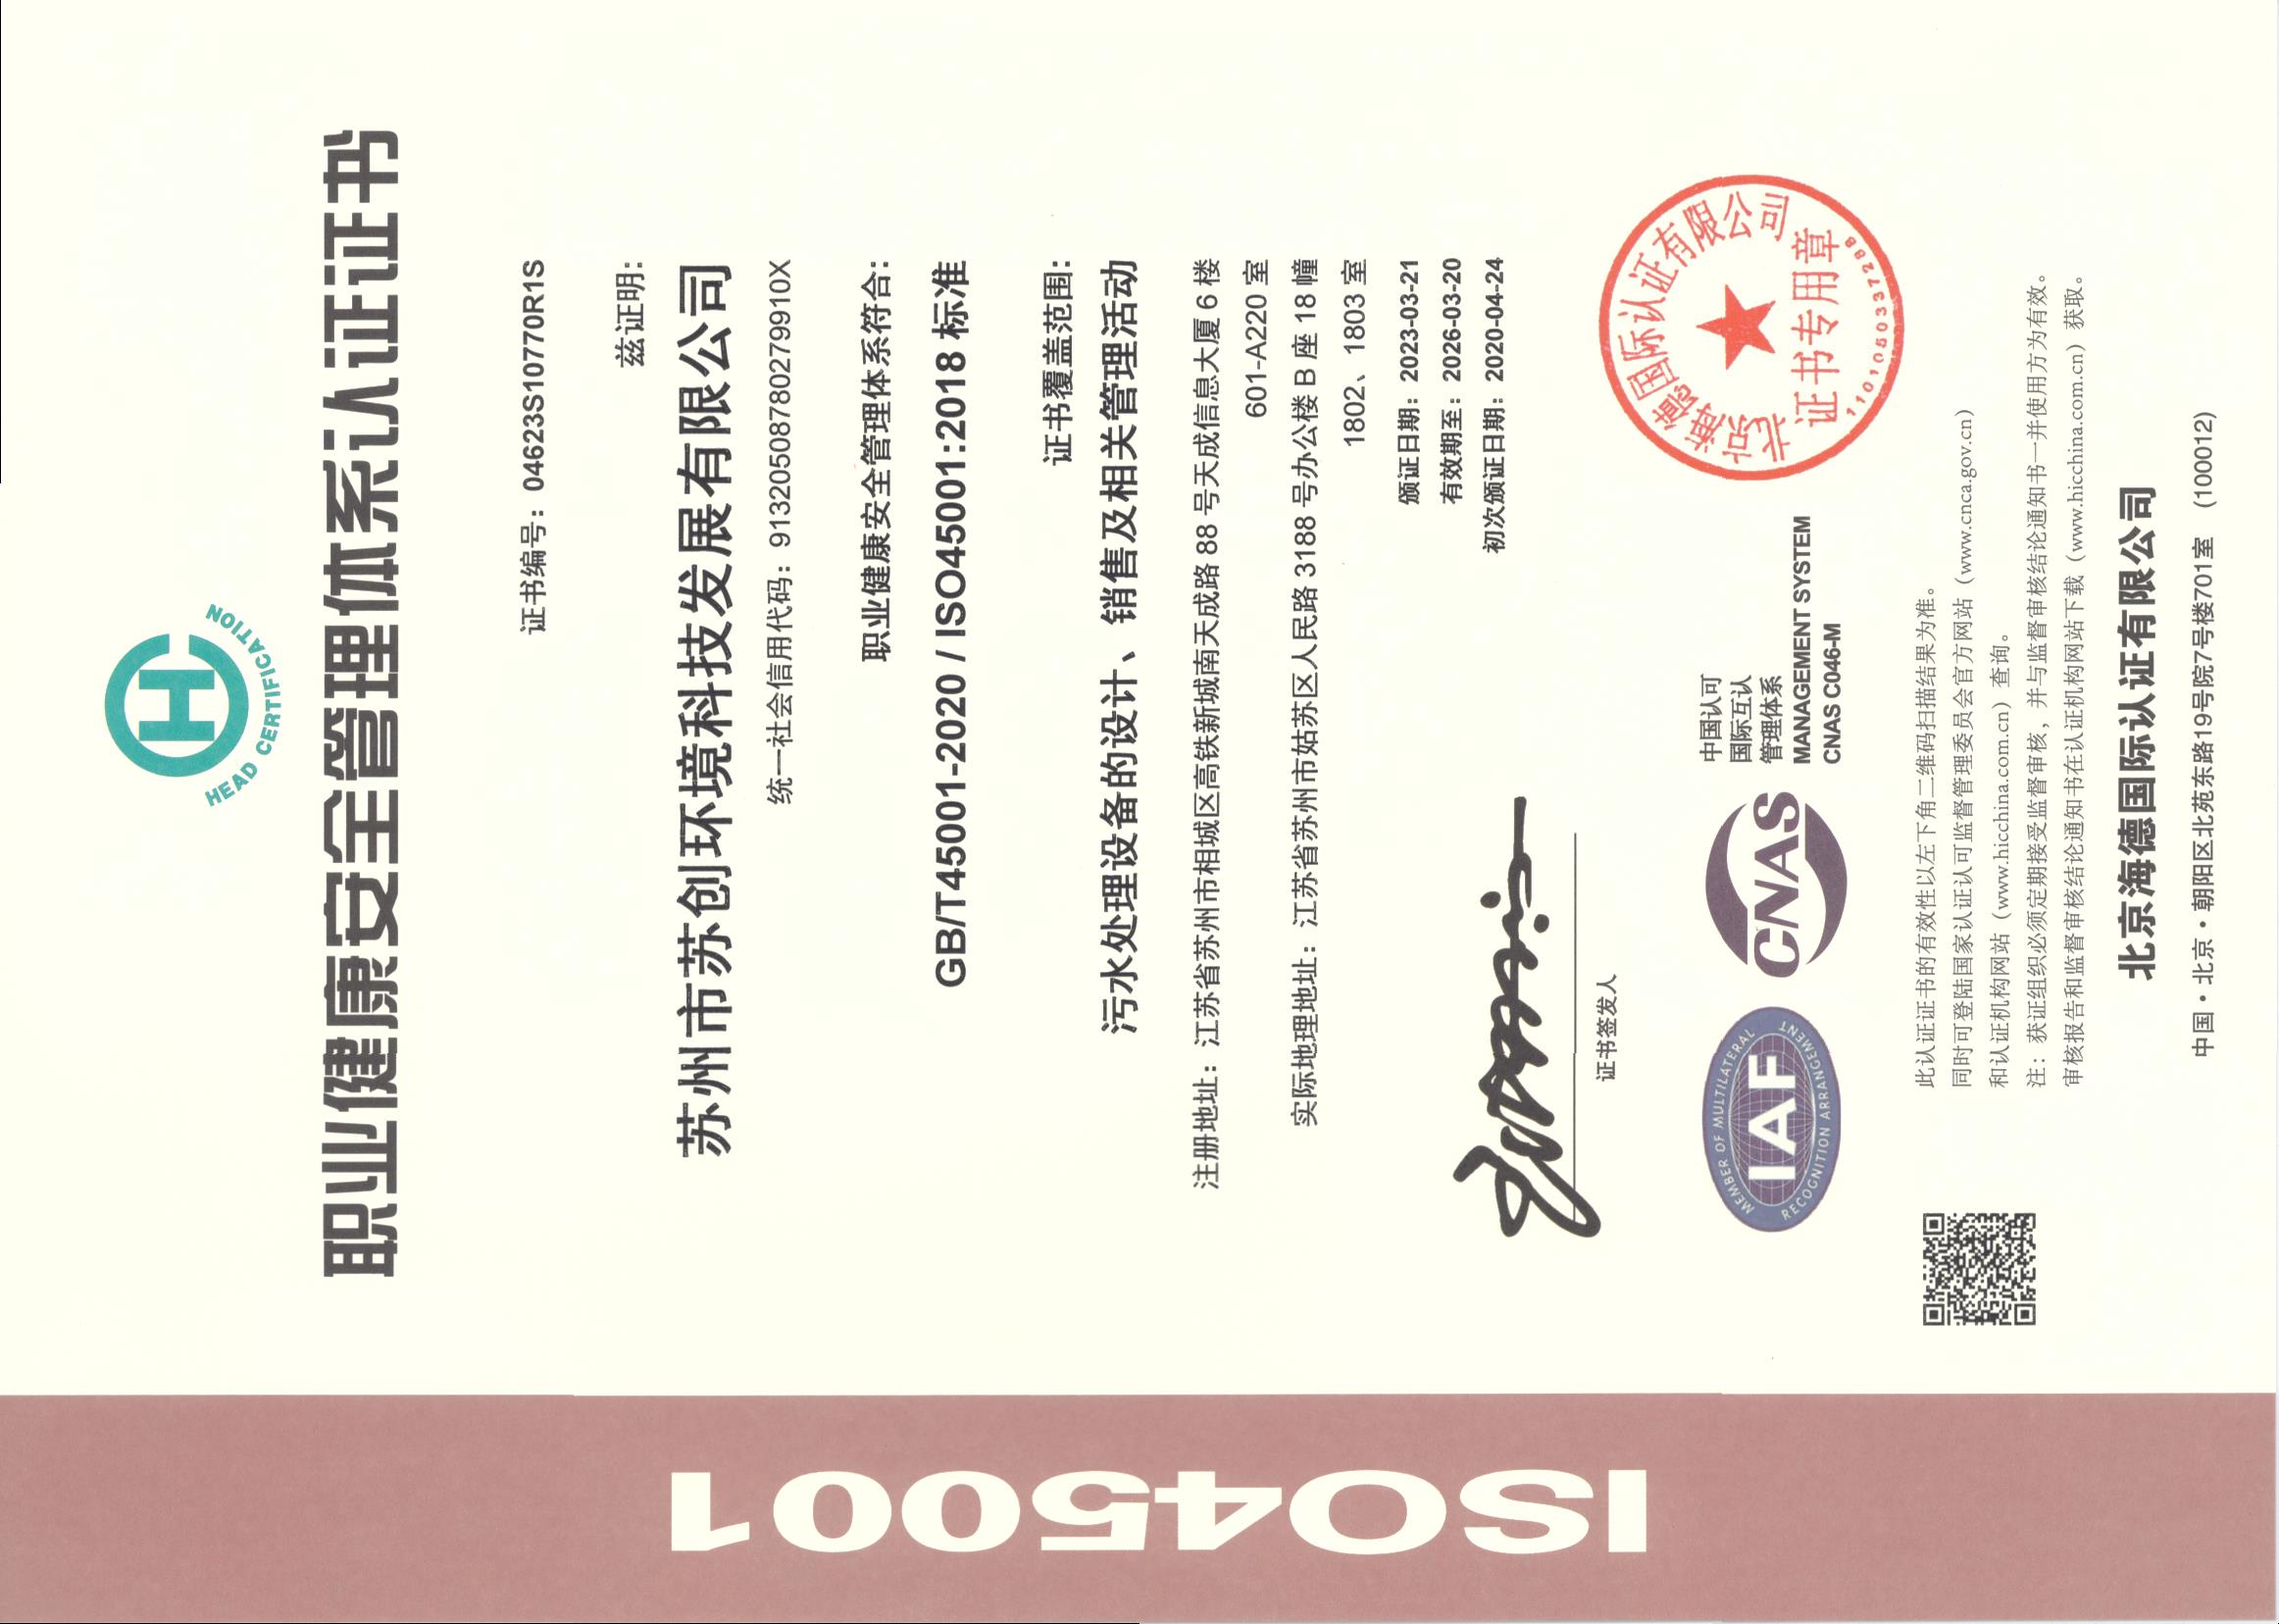 ISO45001职业健康安全管理体系认证证书.jpg